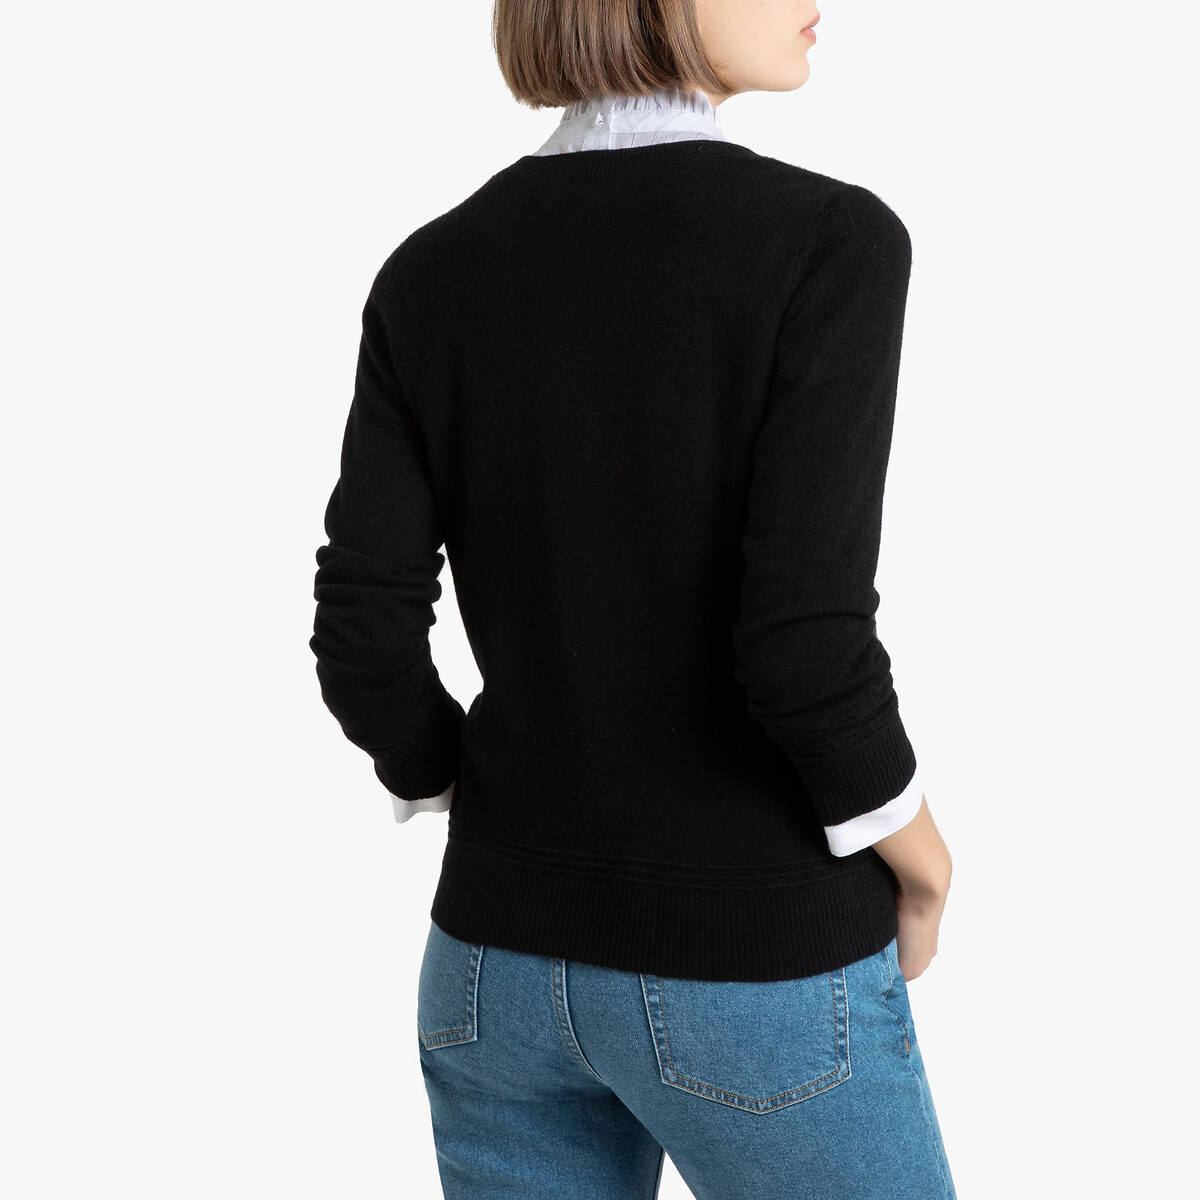 Пуловер La Redoute С круглым вырезом из кашемира XXL черный, размер XXL - фото 4